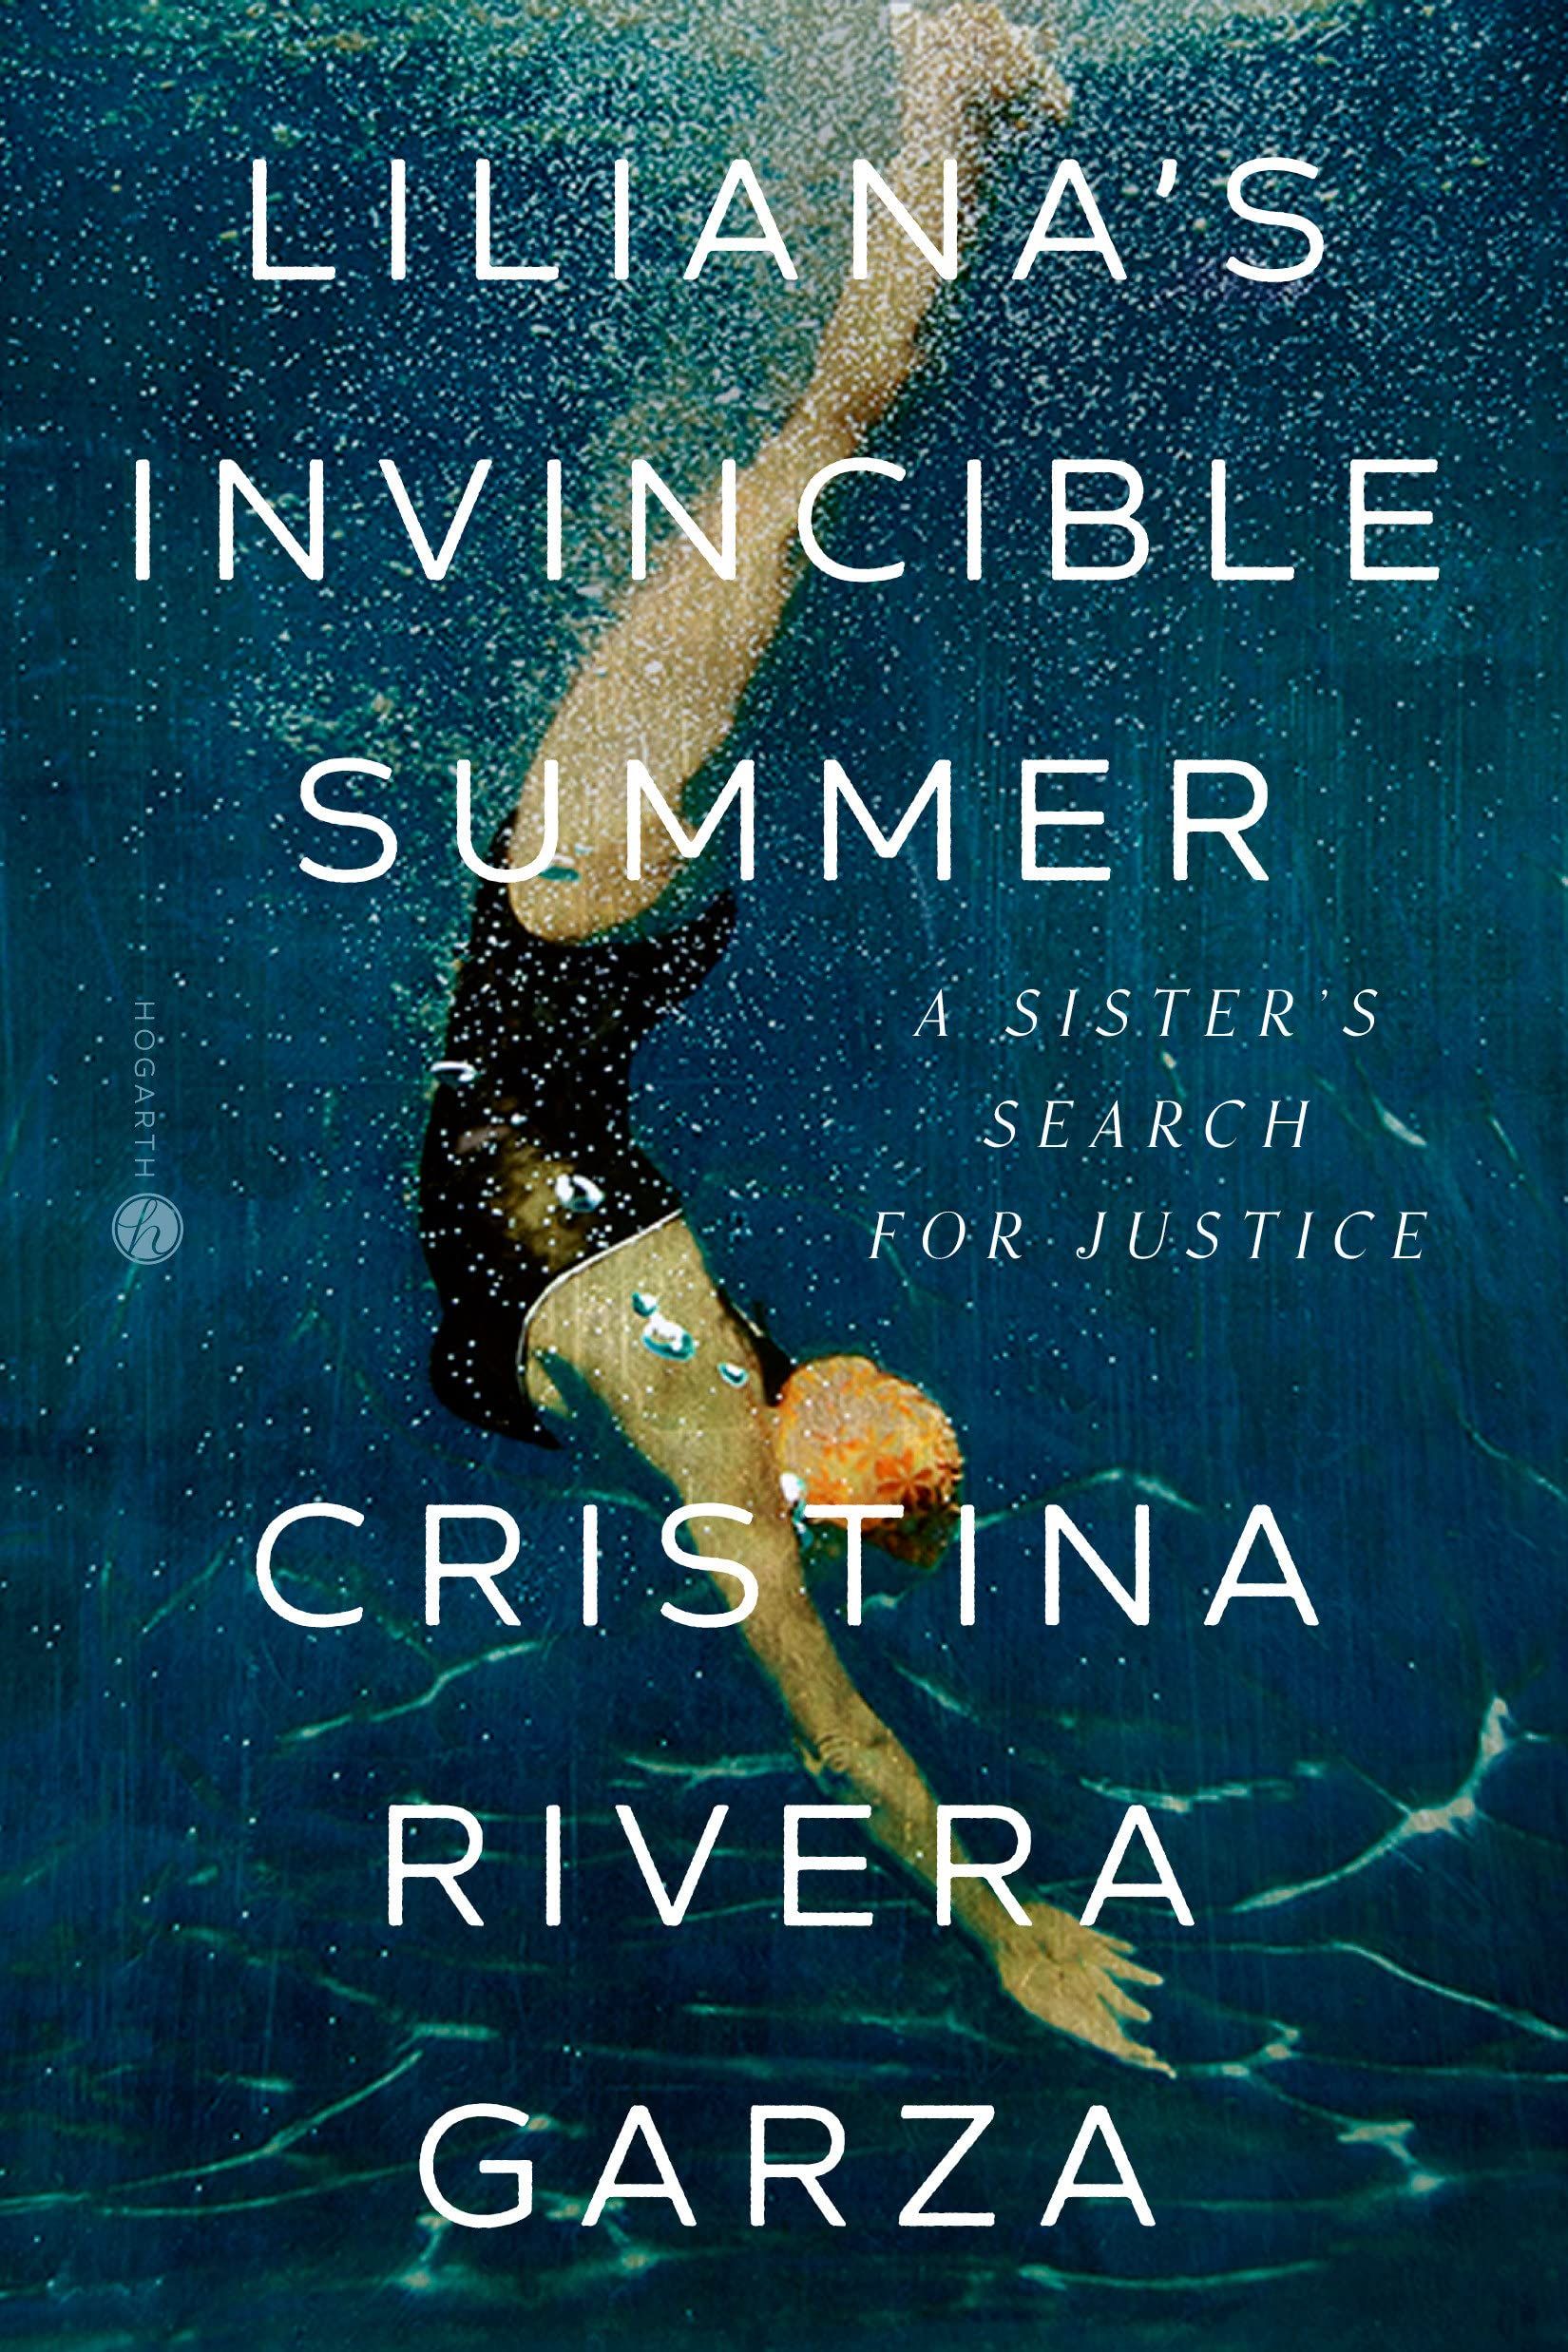 Liliana's Invincible Summer: A Sister's Search for Justice by Cristina Rivera Garza book cover